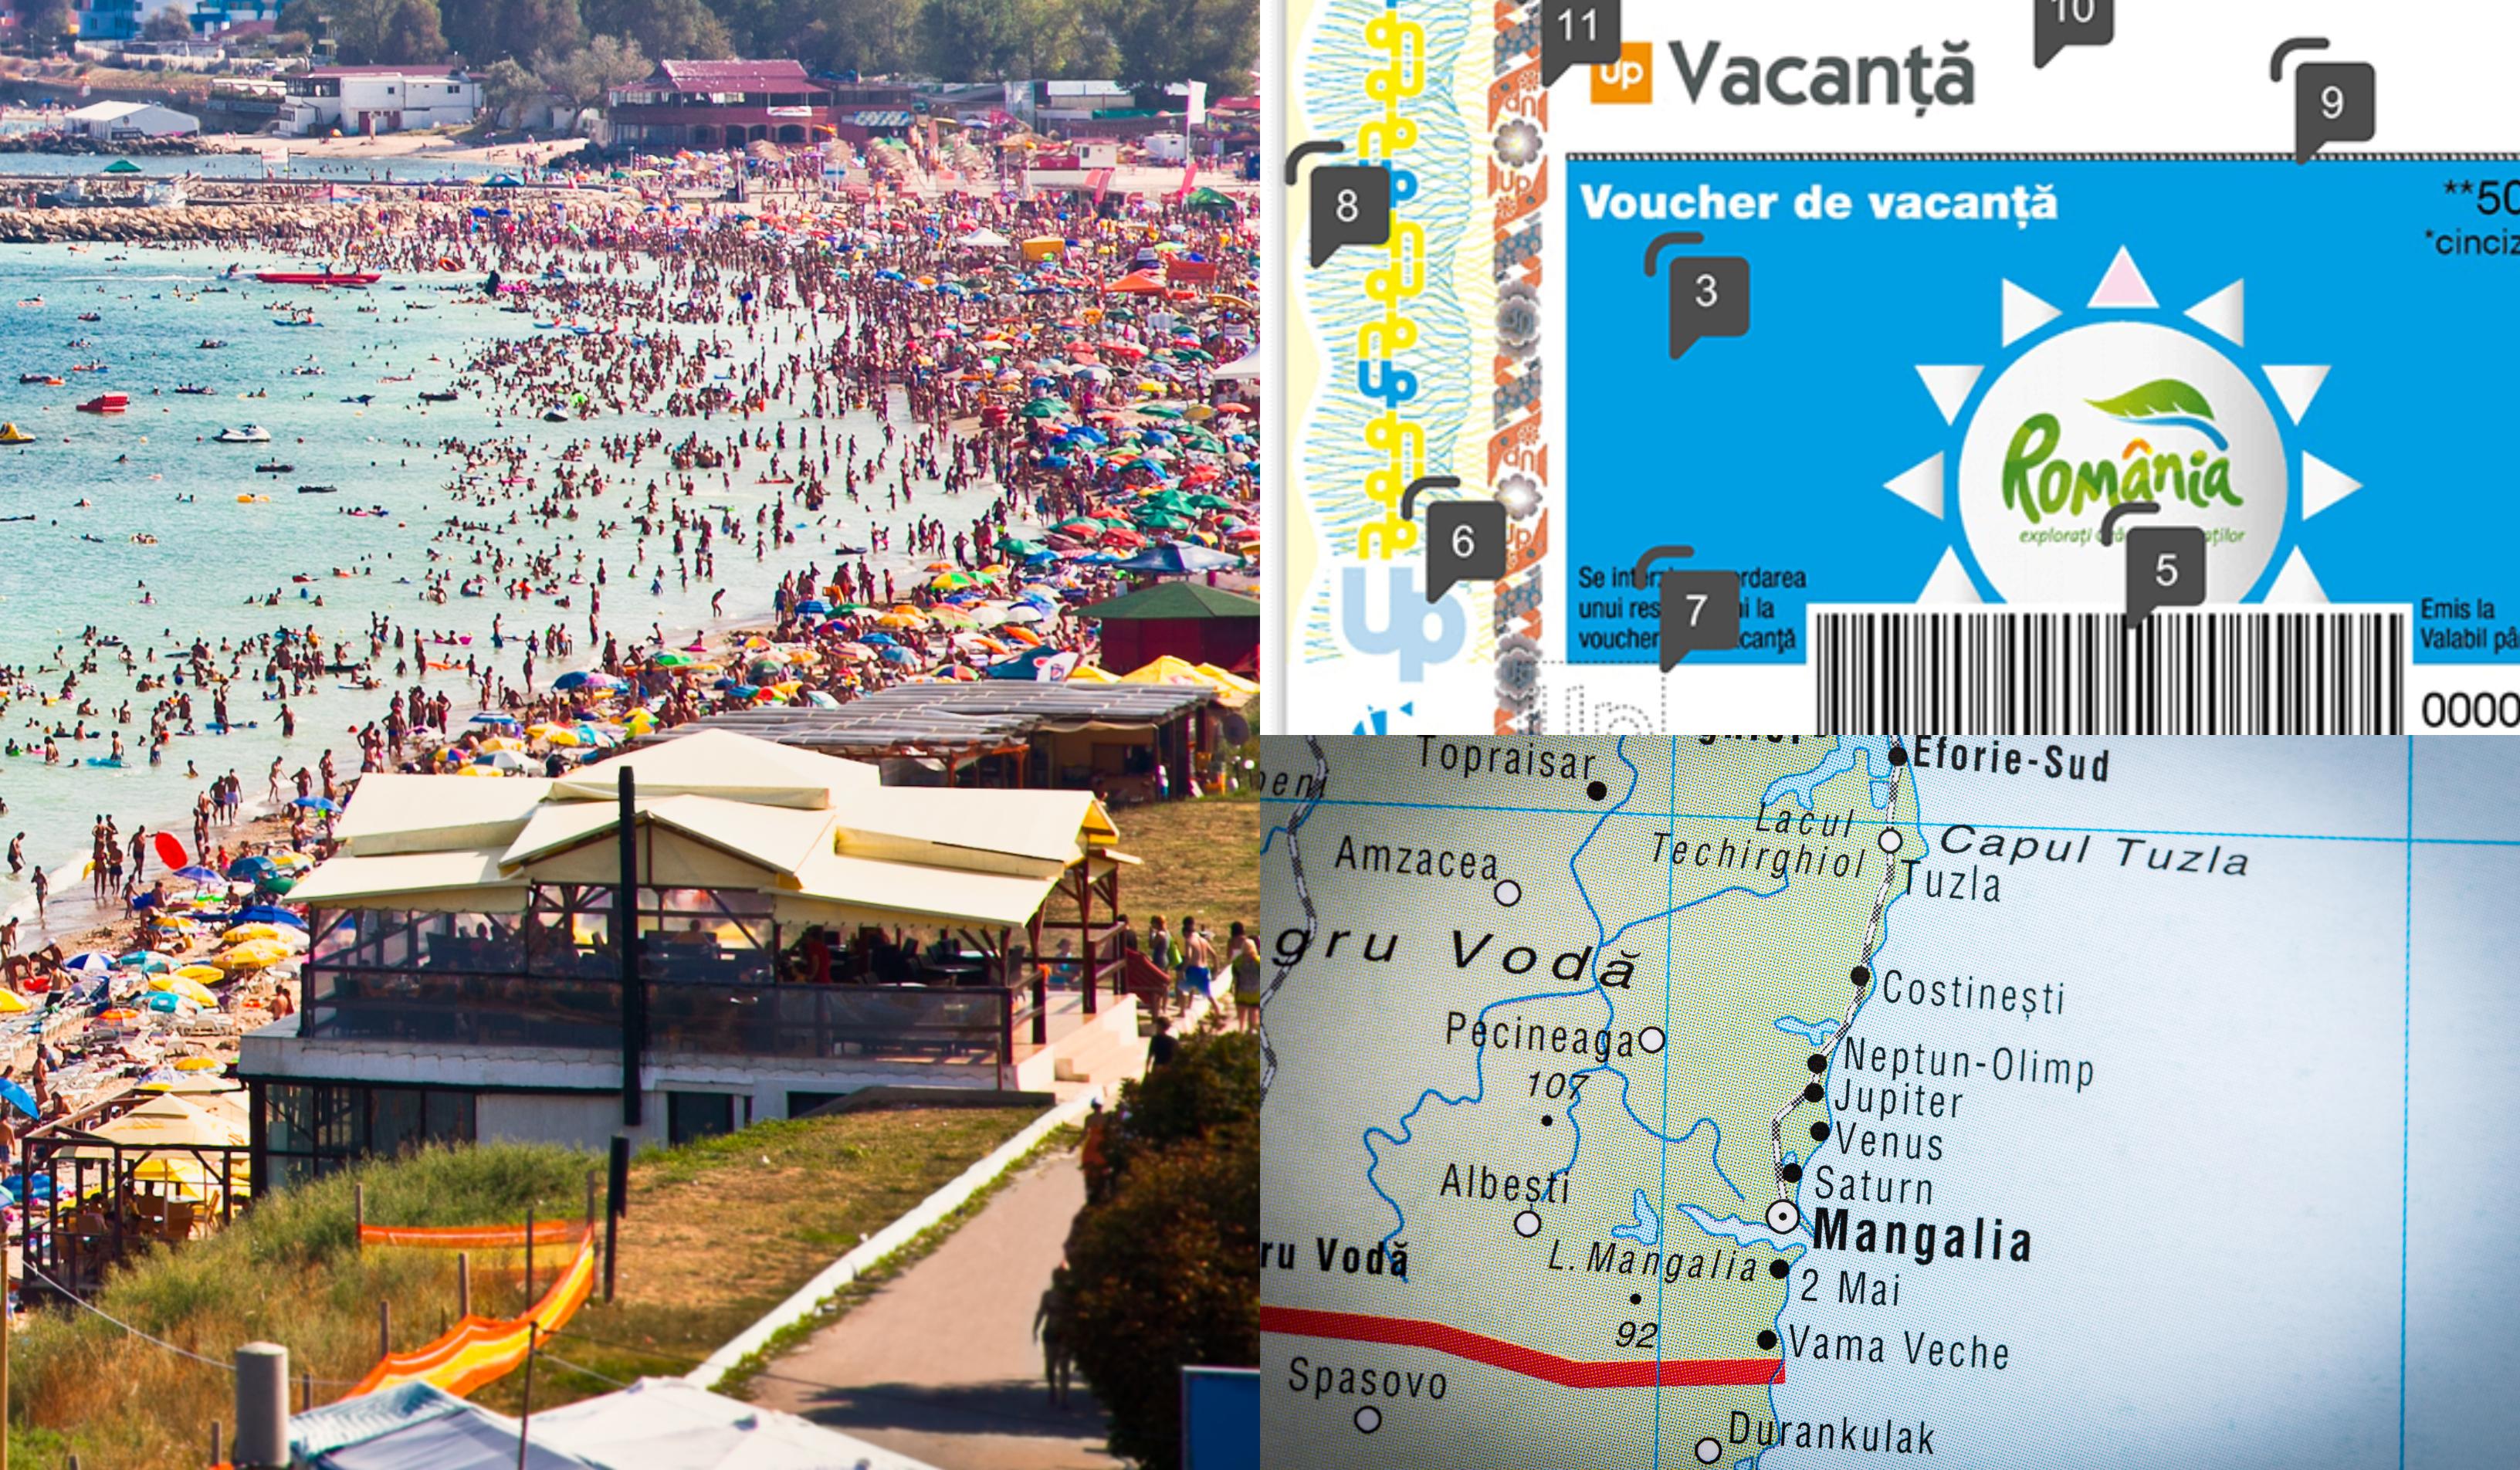 Vouchere de vacanţă 2022. Lista completă a hotelurilor de pe Litoralul românesc care acceptă tichetele de vacanță